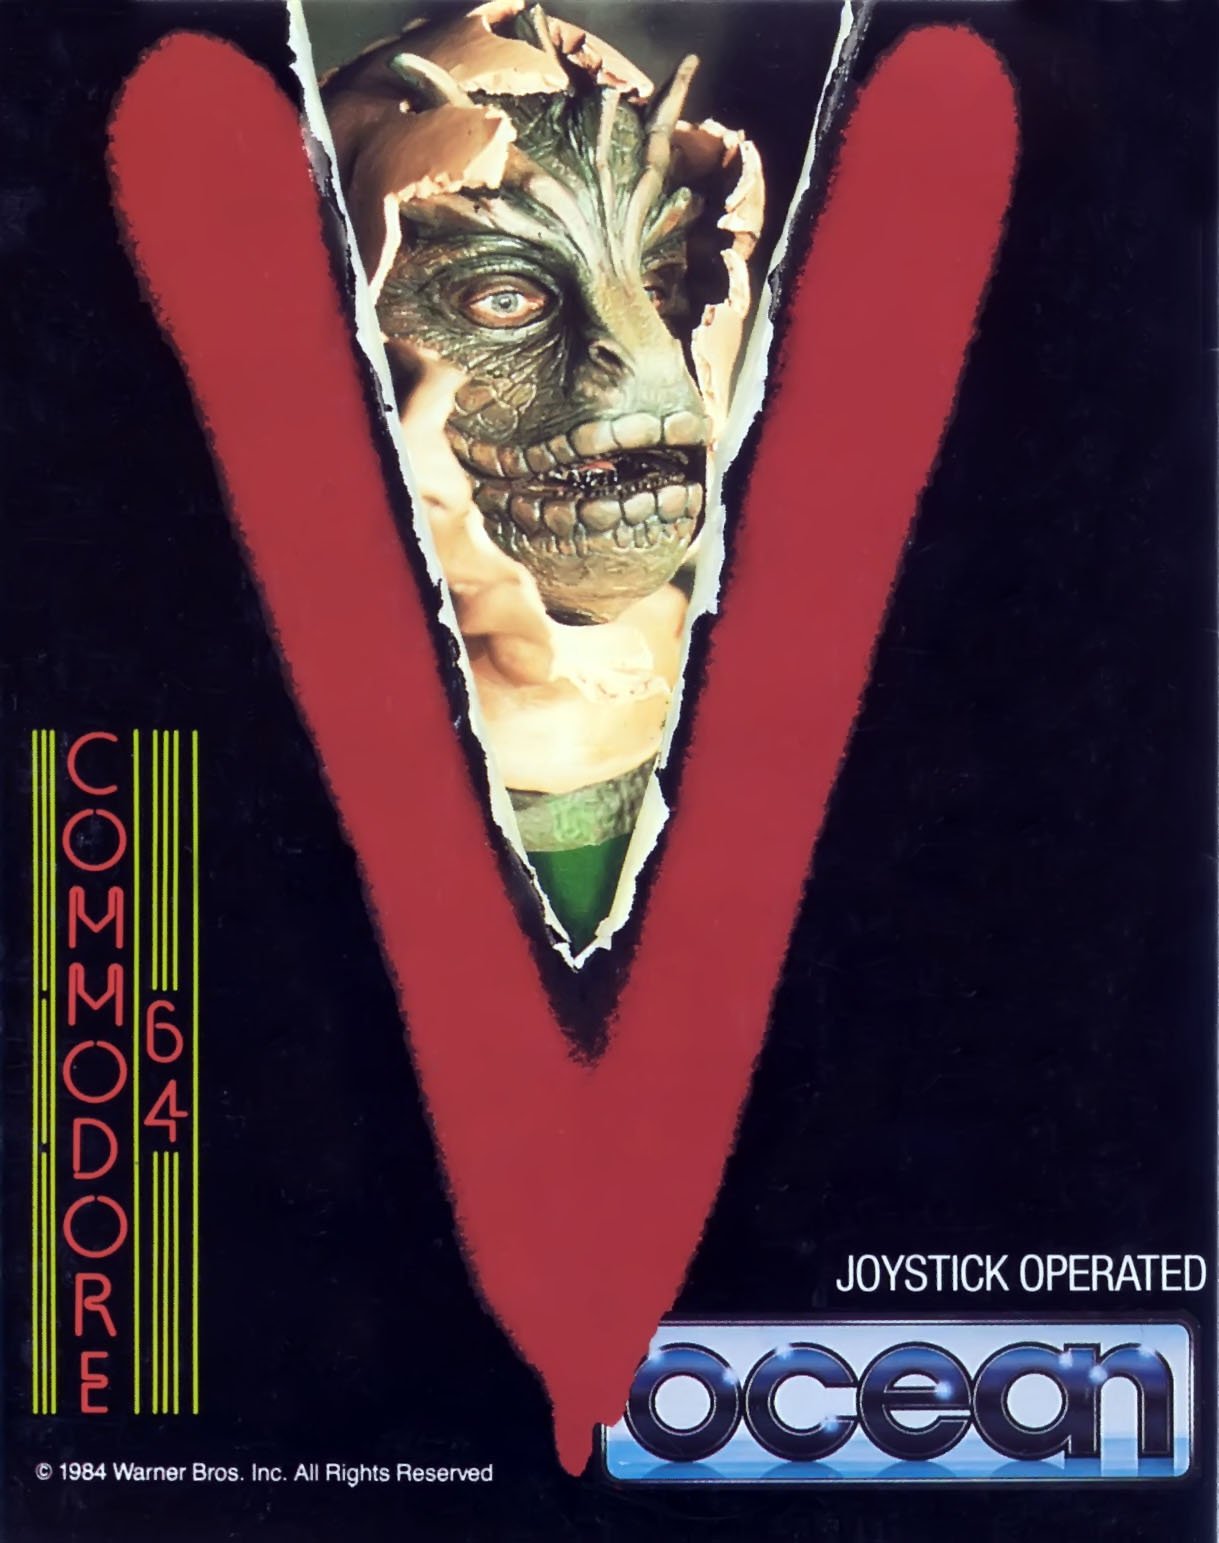 Caratula de V the Computer Game para Commodore 64